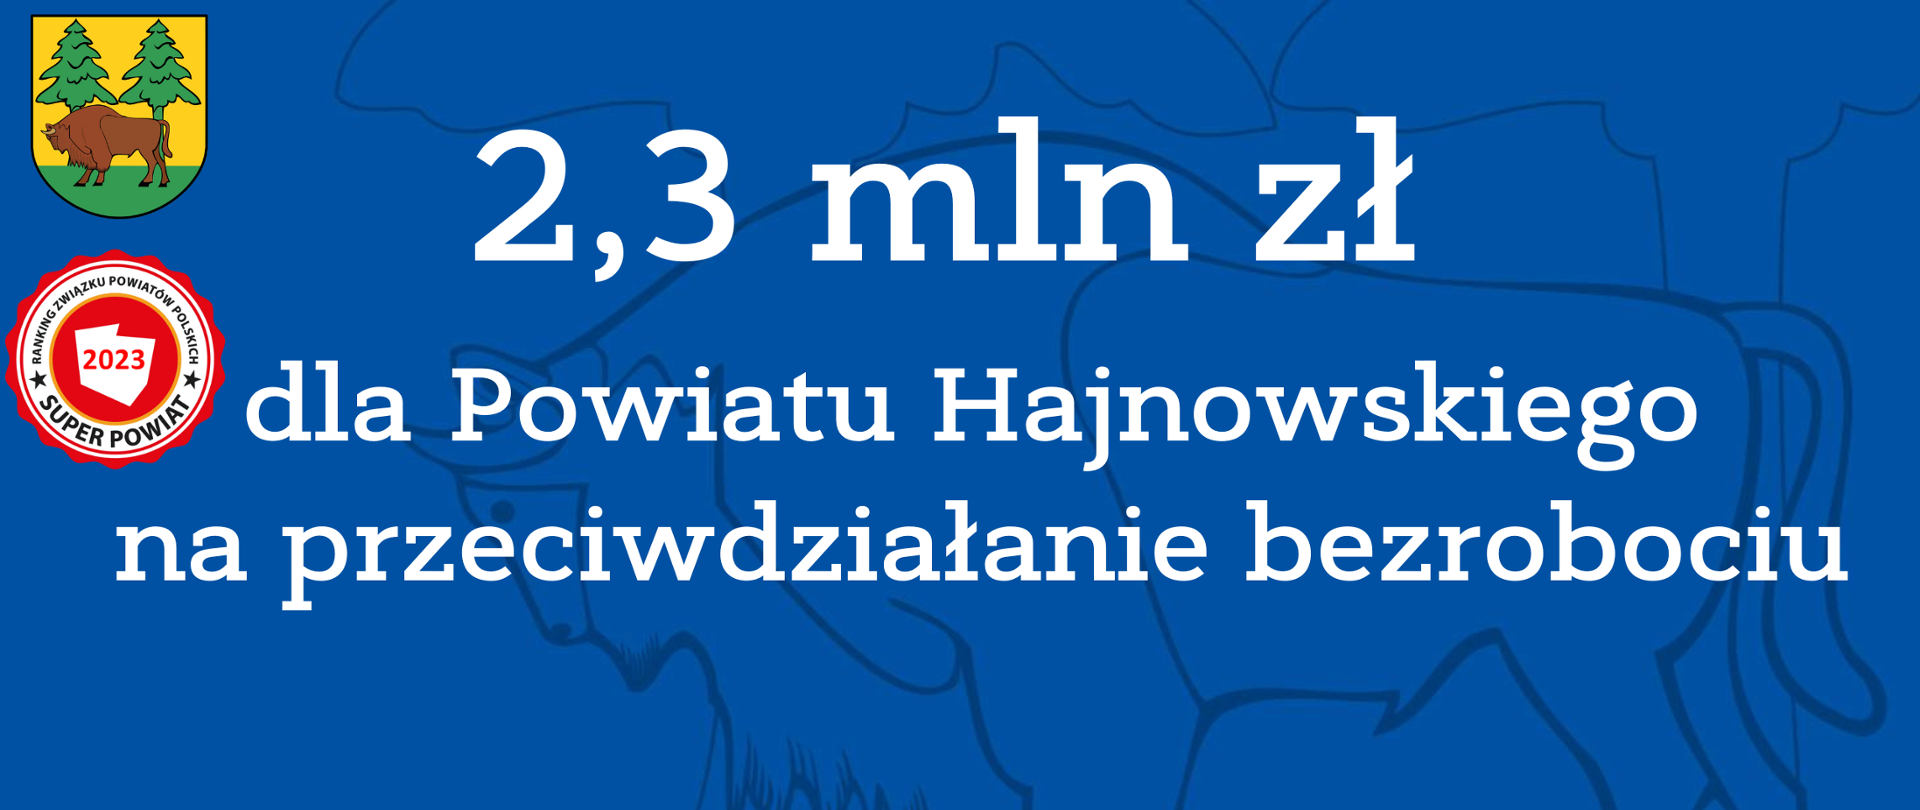 2,3 mln zł dla Powiatu Hajnowskiego na przeciwdziałanie bezrobociu